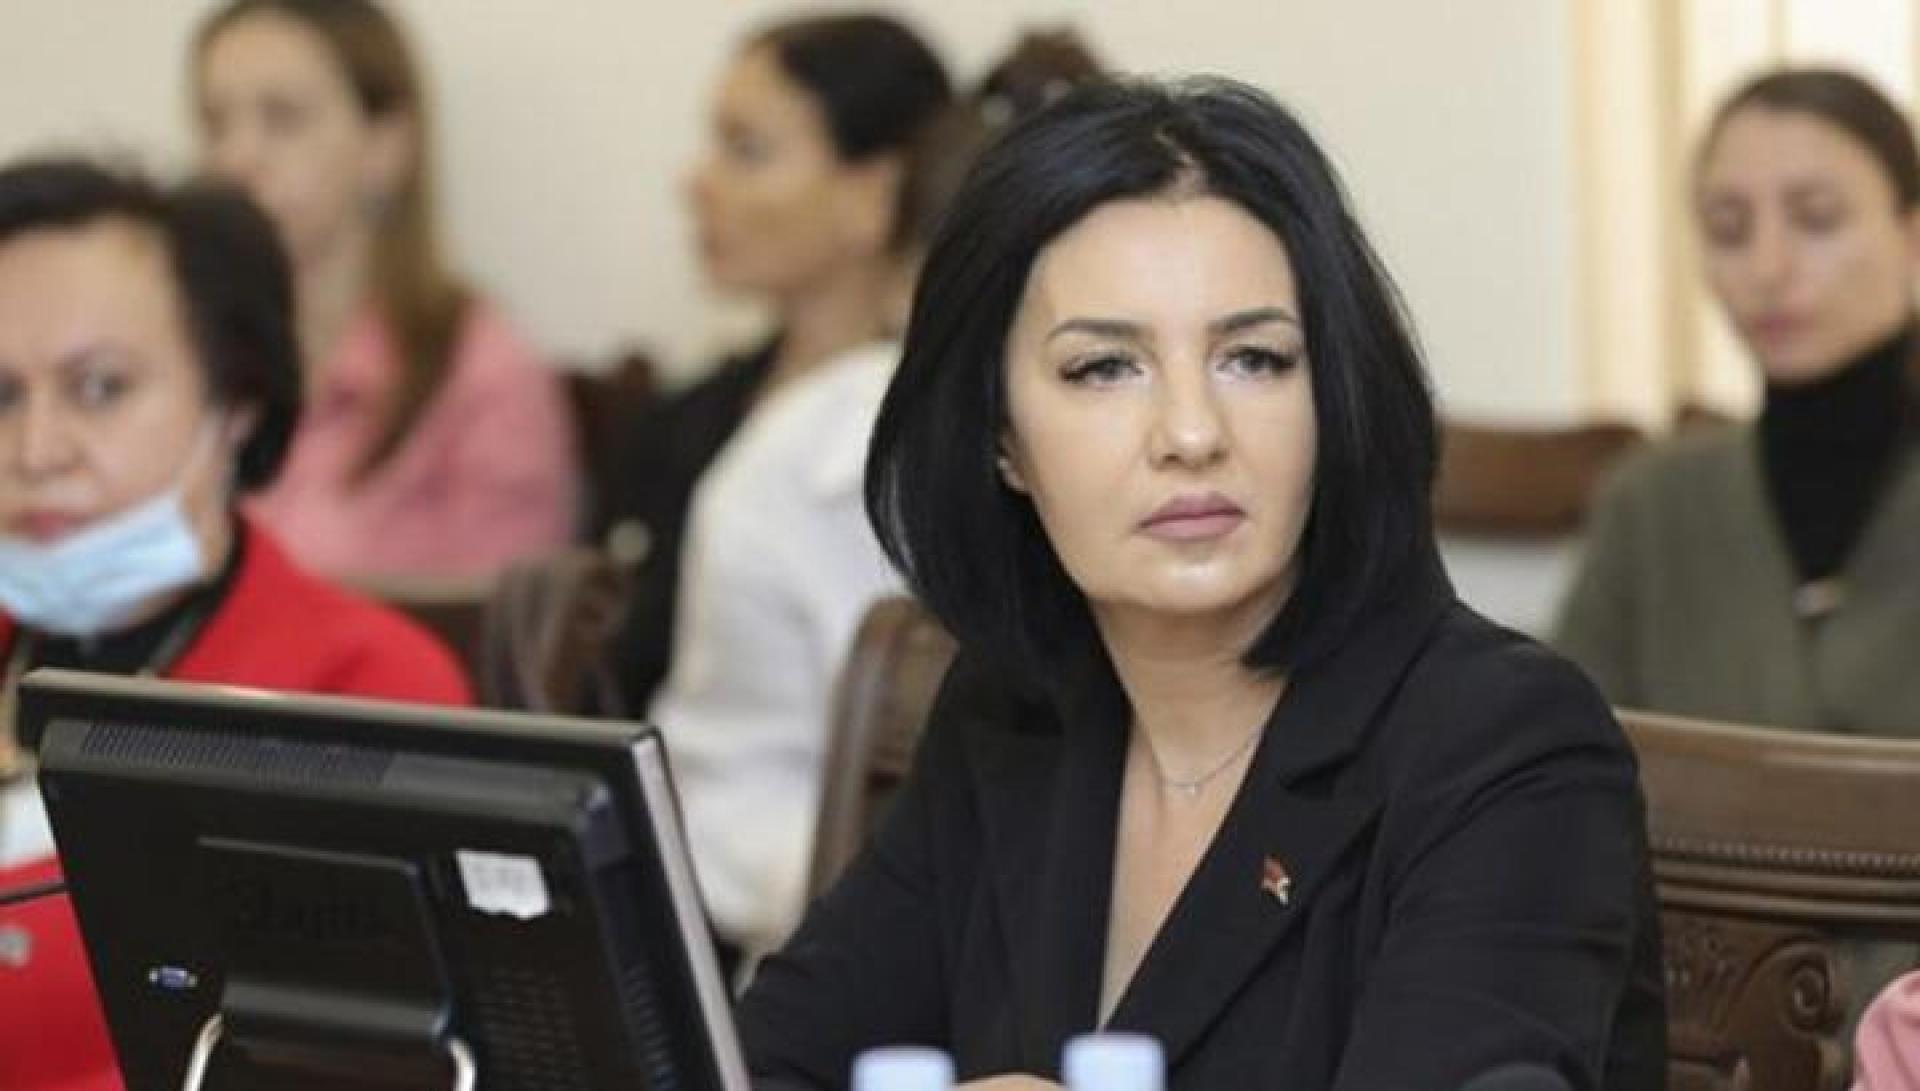 Араик Арутюнян должен обратиться к ответственному номер один - Николу Пашиняну: депутат